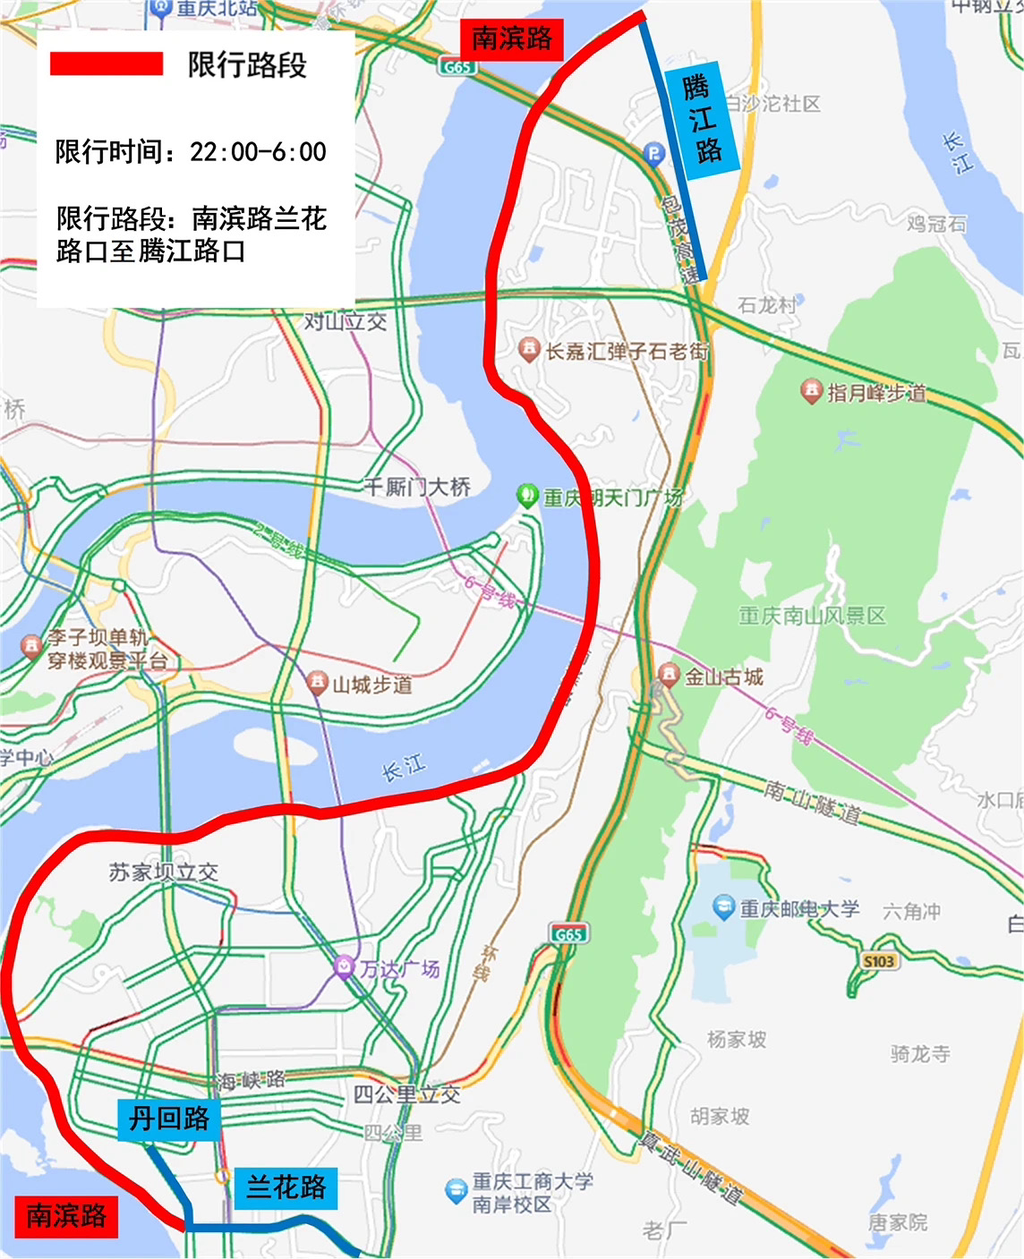 广州禁摩区域图2020图片